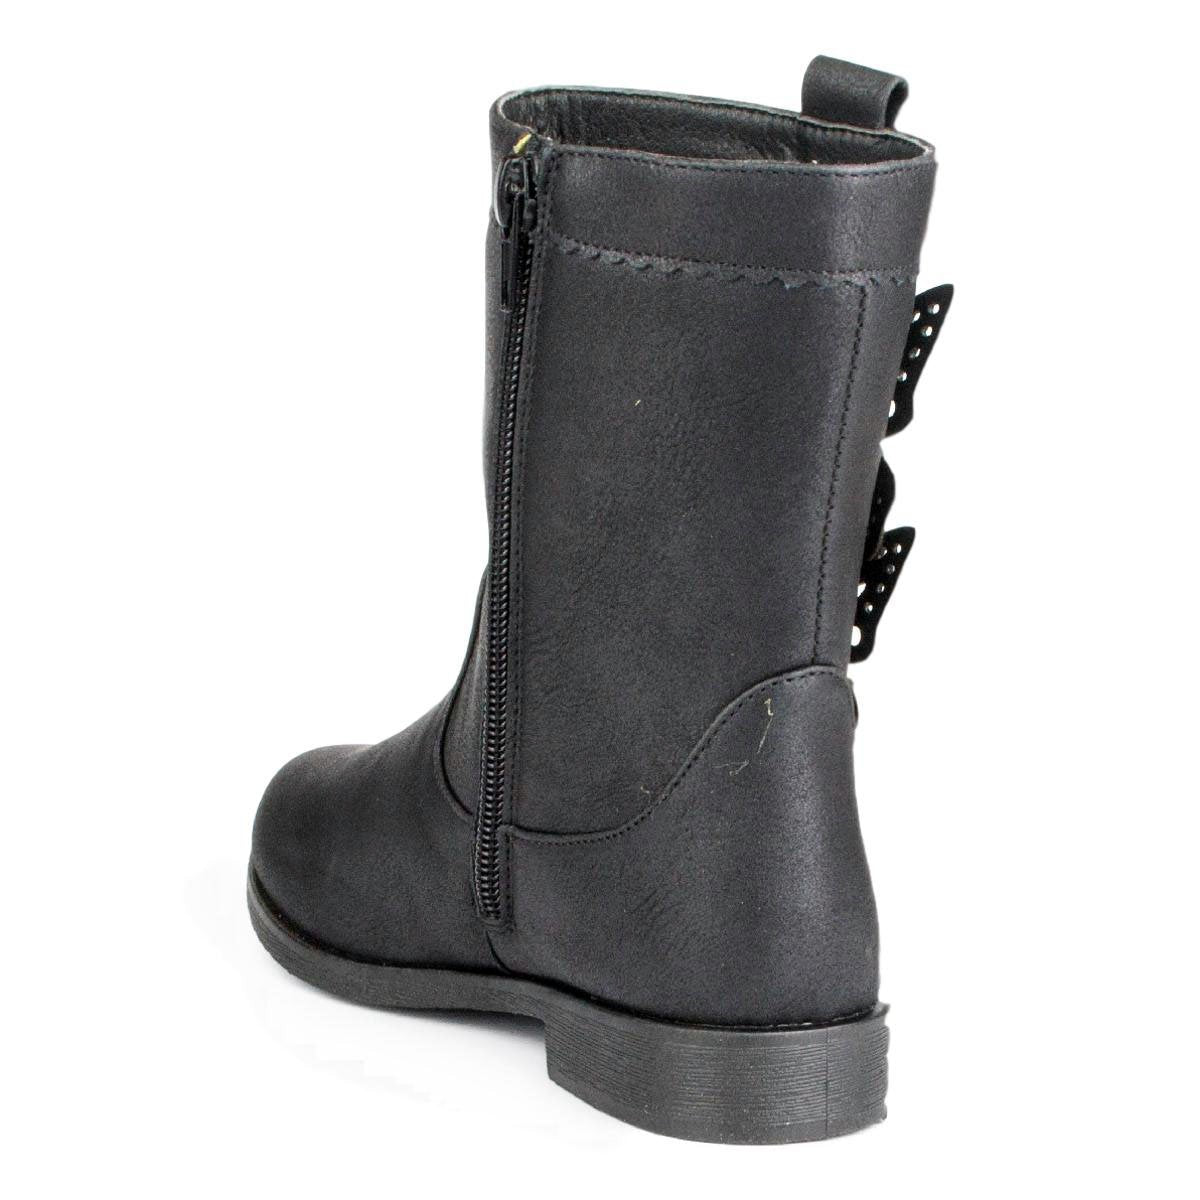 Girls Black Zip Up Boot - Watney Shoes 